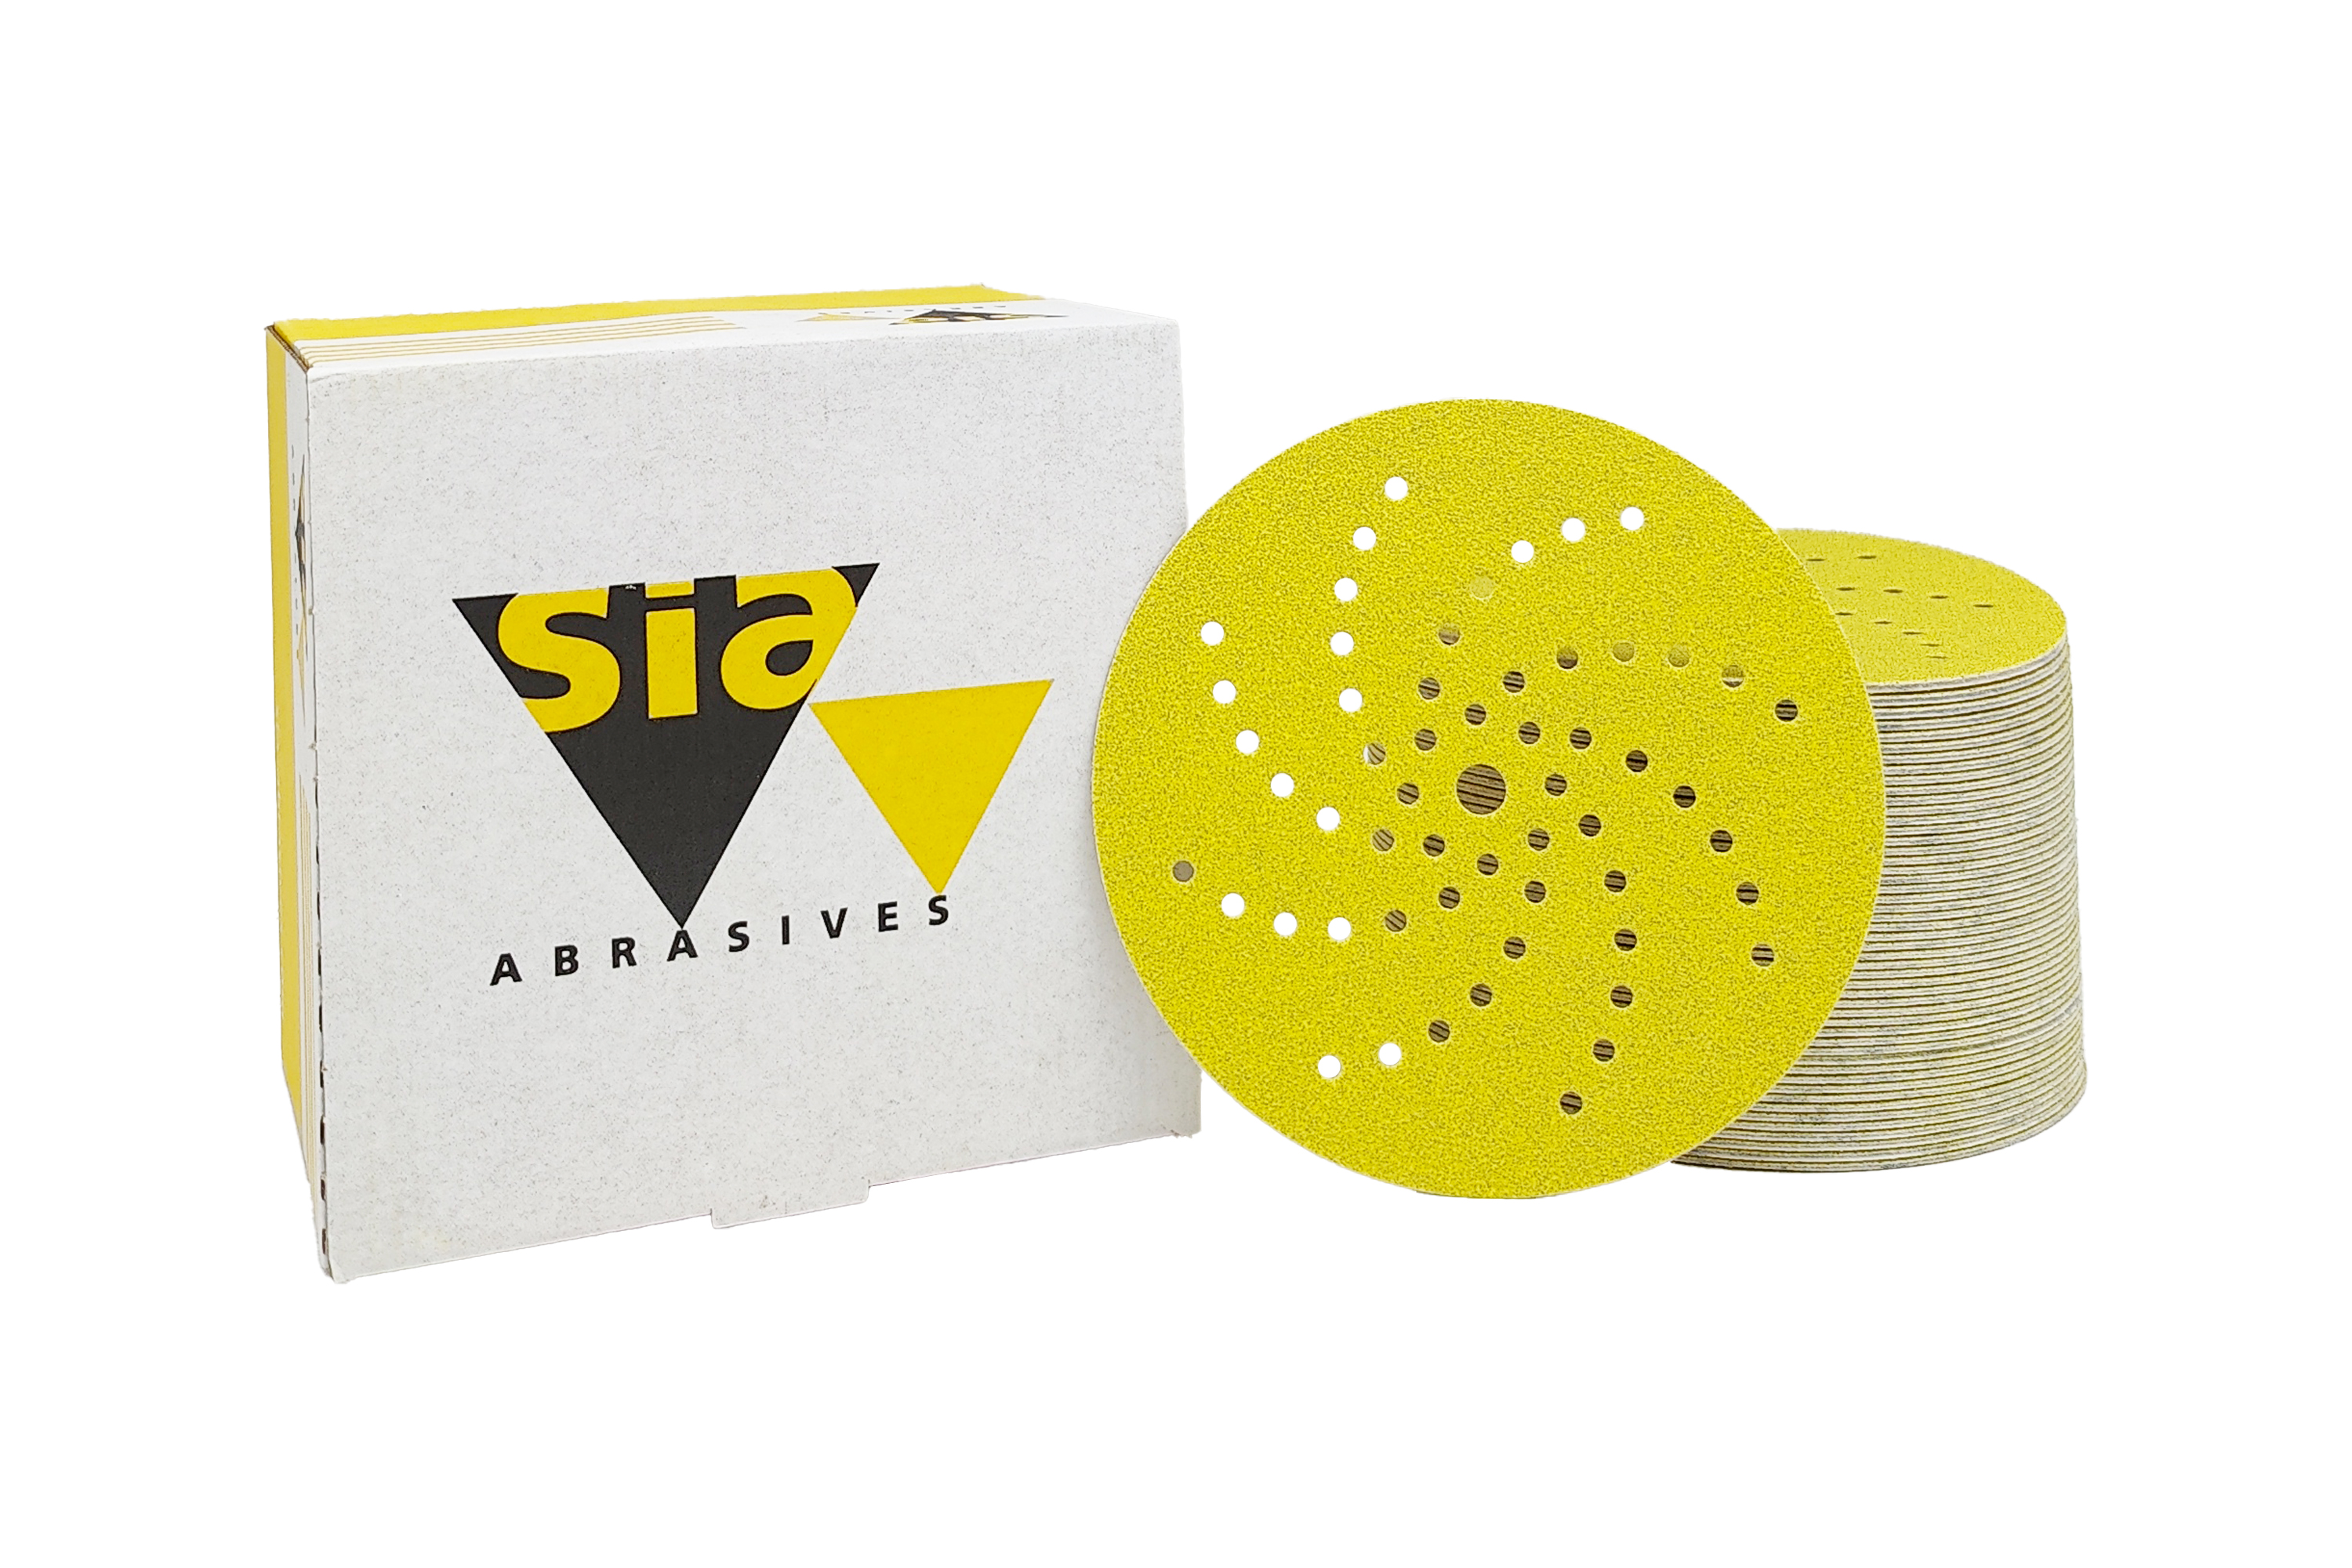 Abbildung Sia Siarex 150mm 57L Verpackung und Scheiben als Stapel.